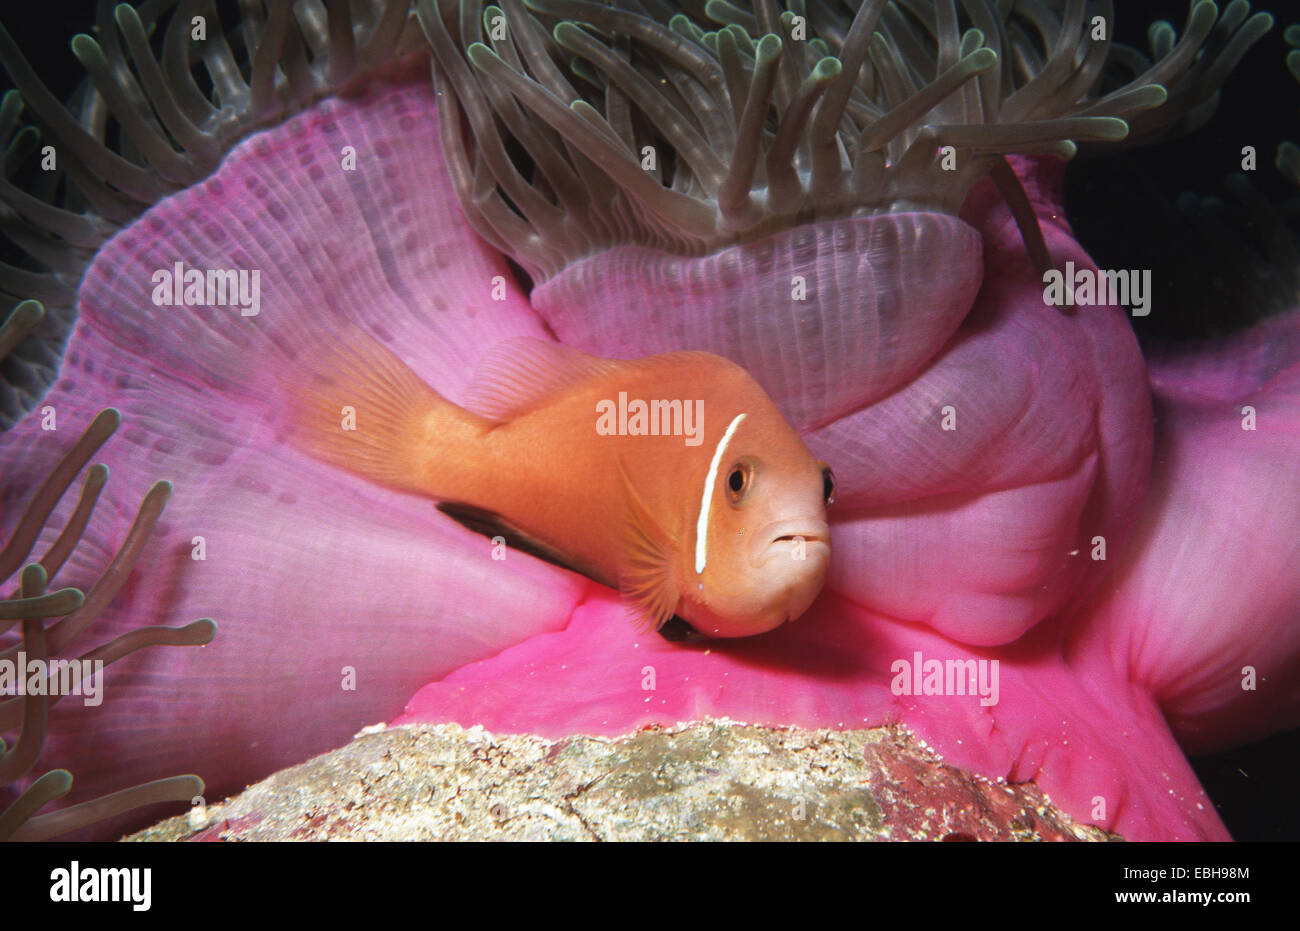 Negro-aletas anemonefish anemonefish, Maldivas (Amphiprion nigripes mit Heteractis magnifica), SIMBIOSIS. Foto de stock